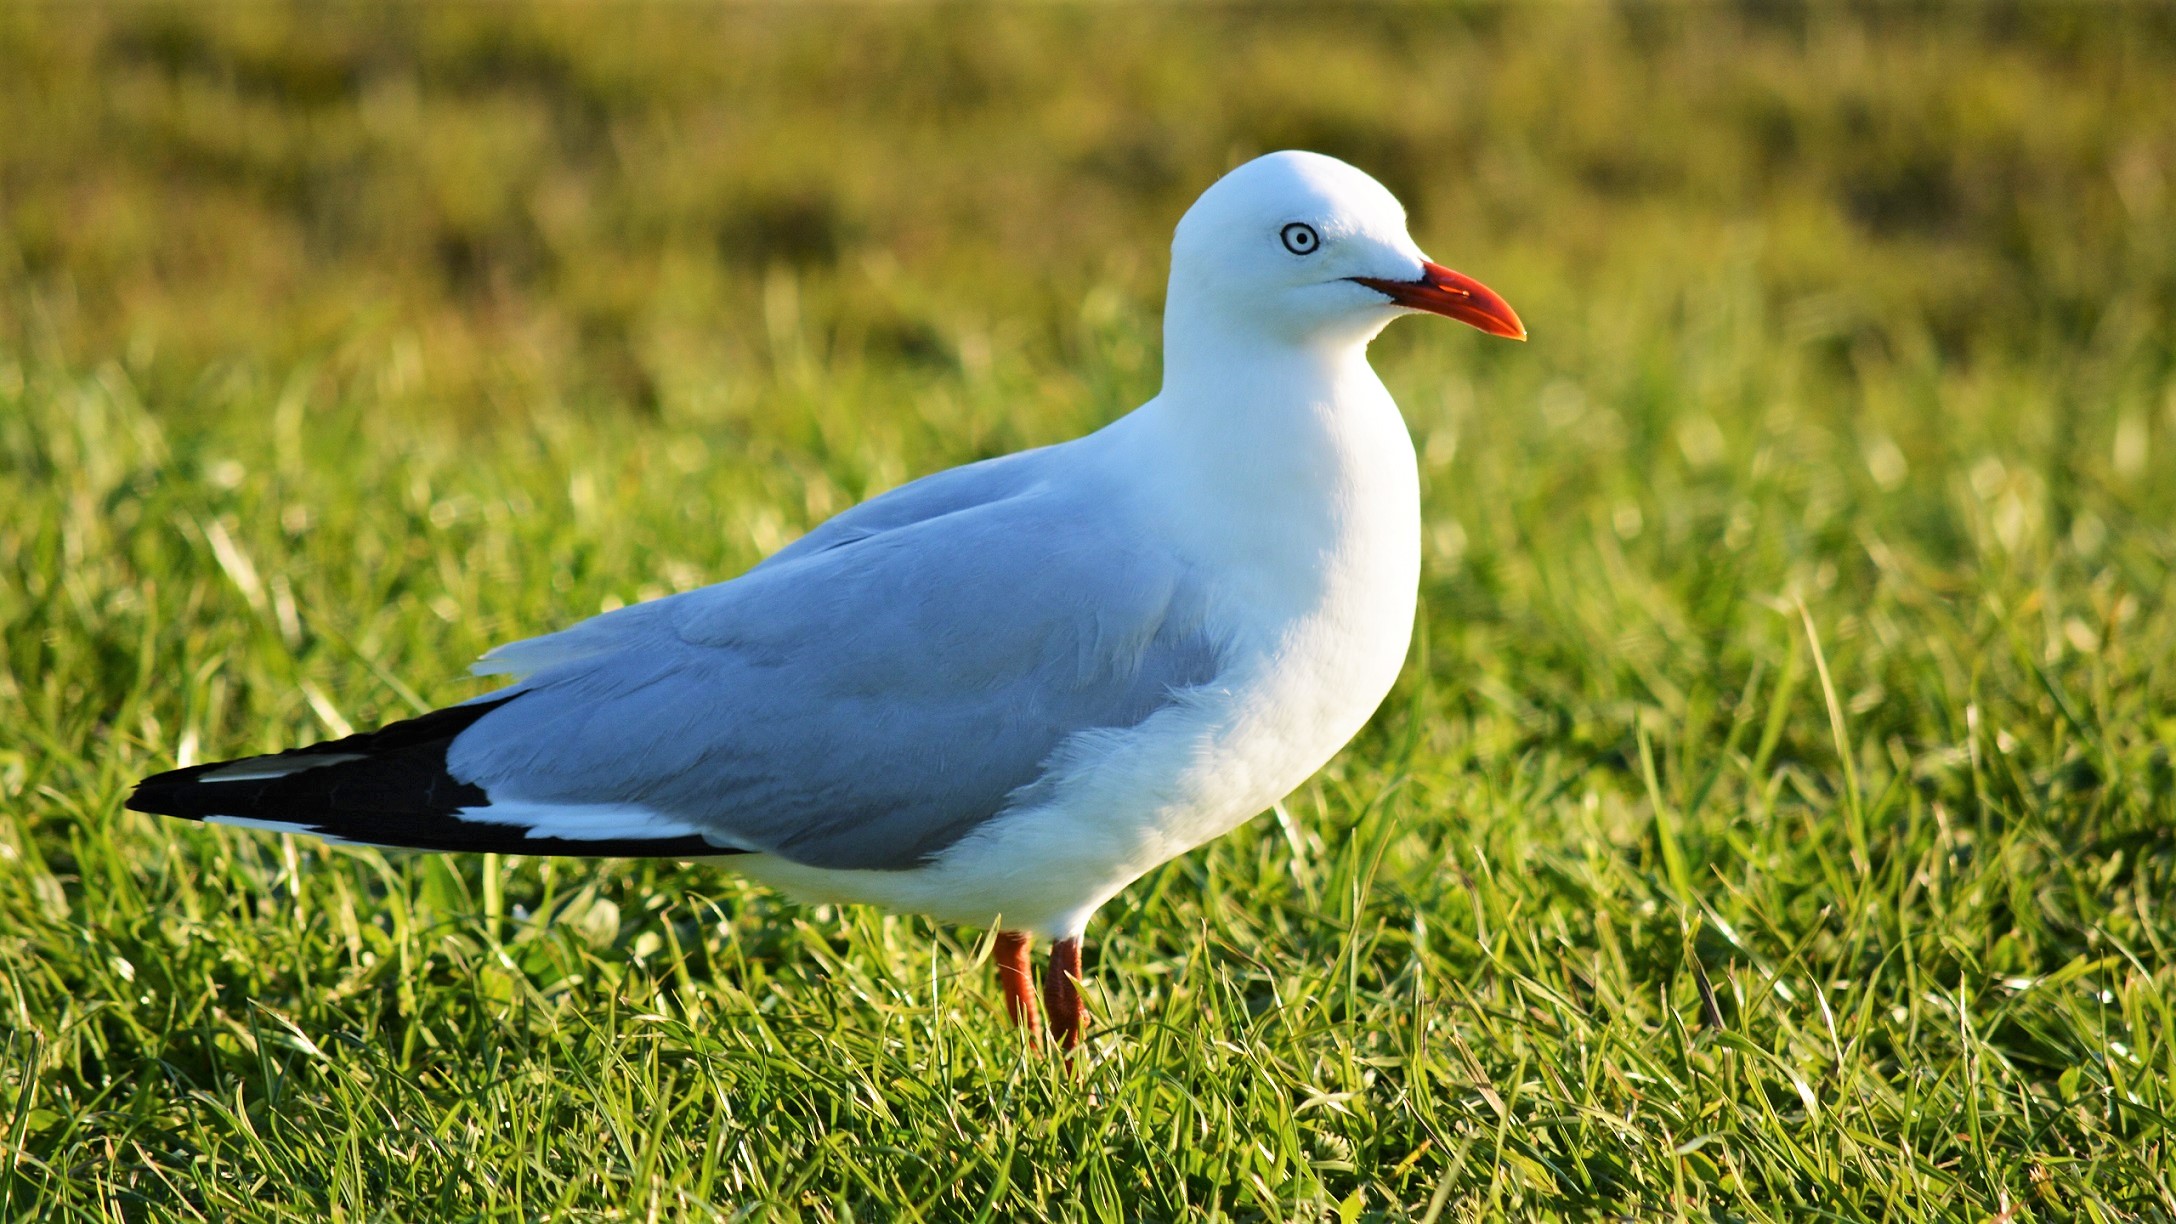 Bird Grass Seagull 2176x1224